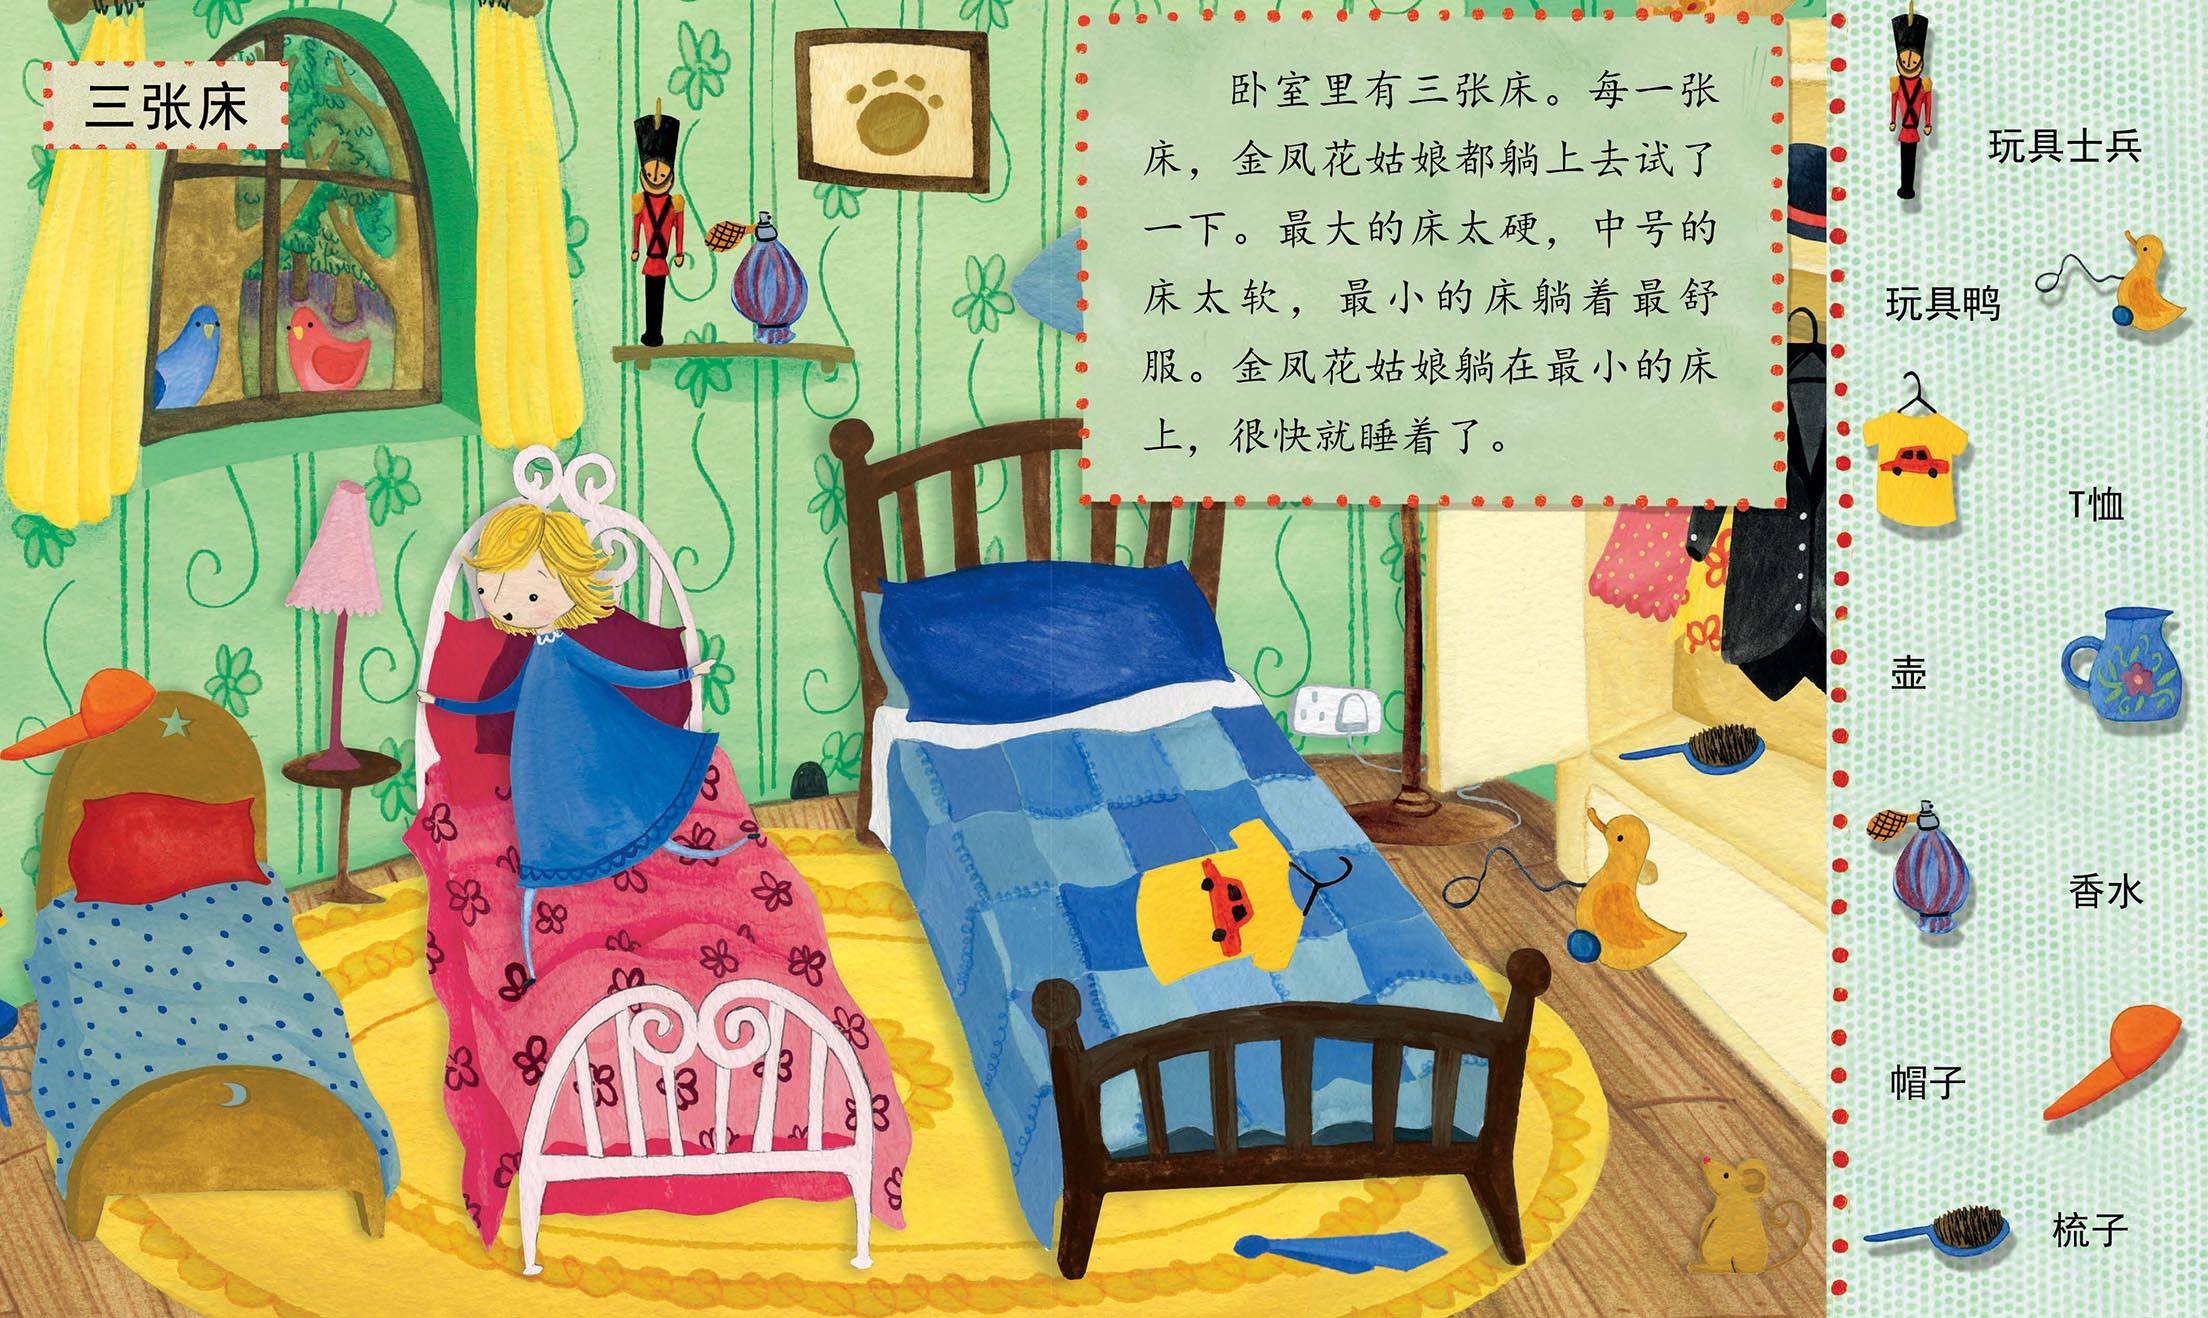 儿童绘本故事推荐《金凤花姑娘和三头熊的故事》